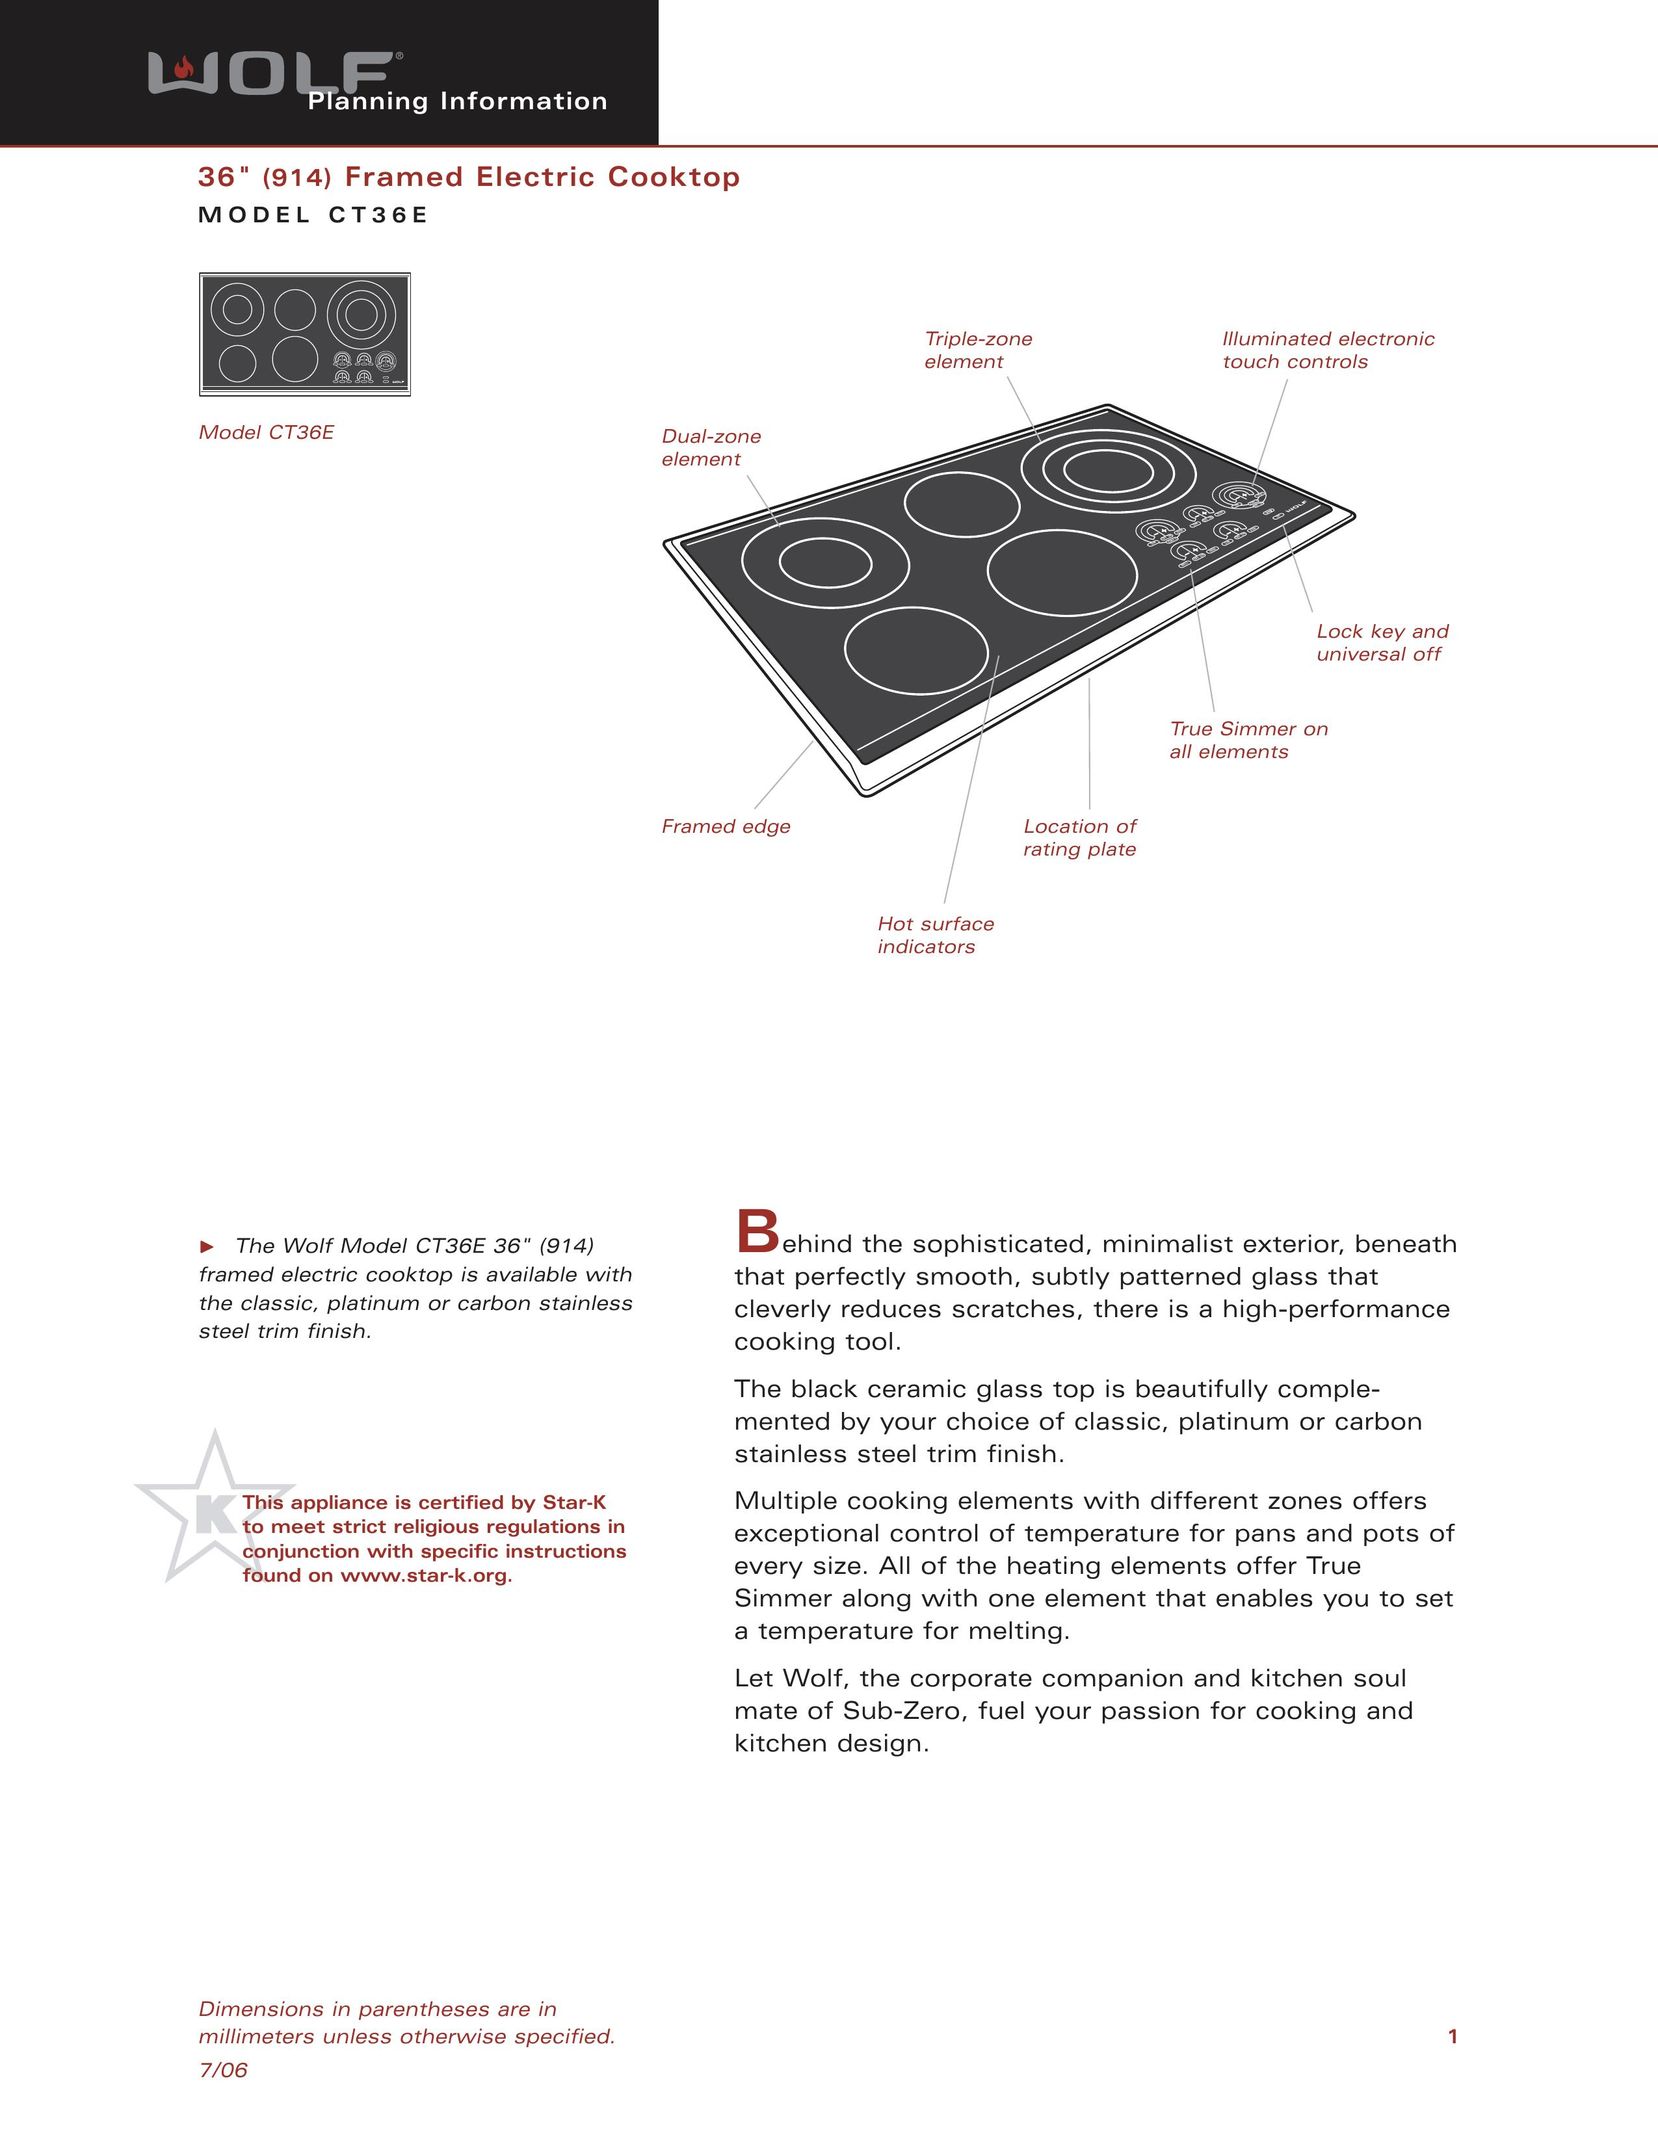 Sub-Zero CT36E Cooktop User Manual